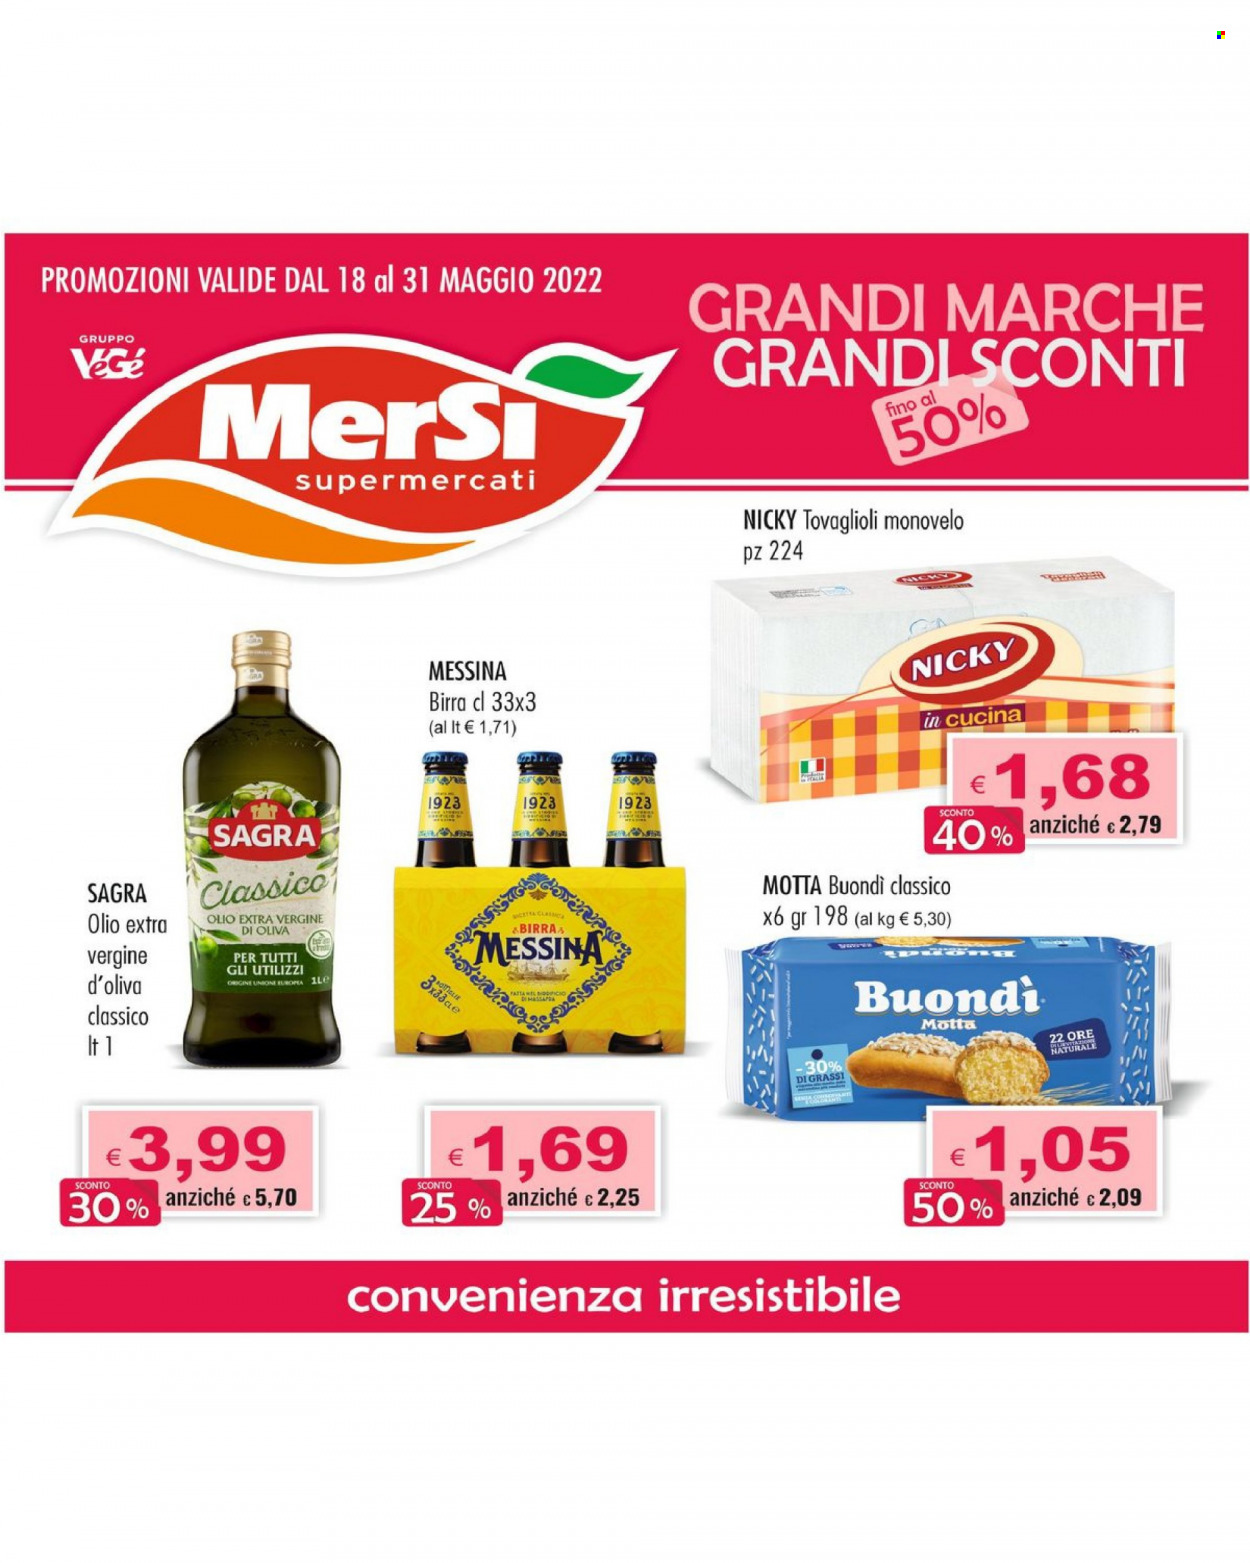 thumbnail - Volantino MerSì - 18/5/2022 - 31/5/2022 - Prodotti in offerta - birra, Motta, olio, olio extra vergine di oliva, Nicky, tovaglioli. Pagina 1.